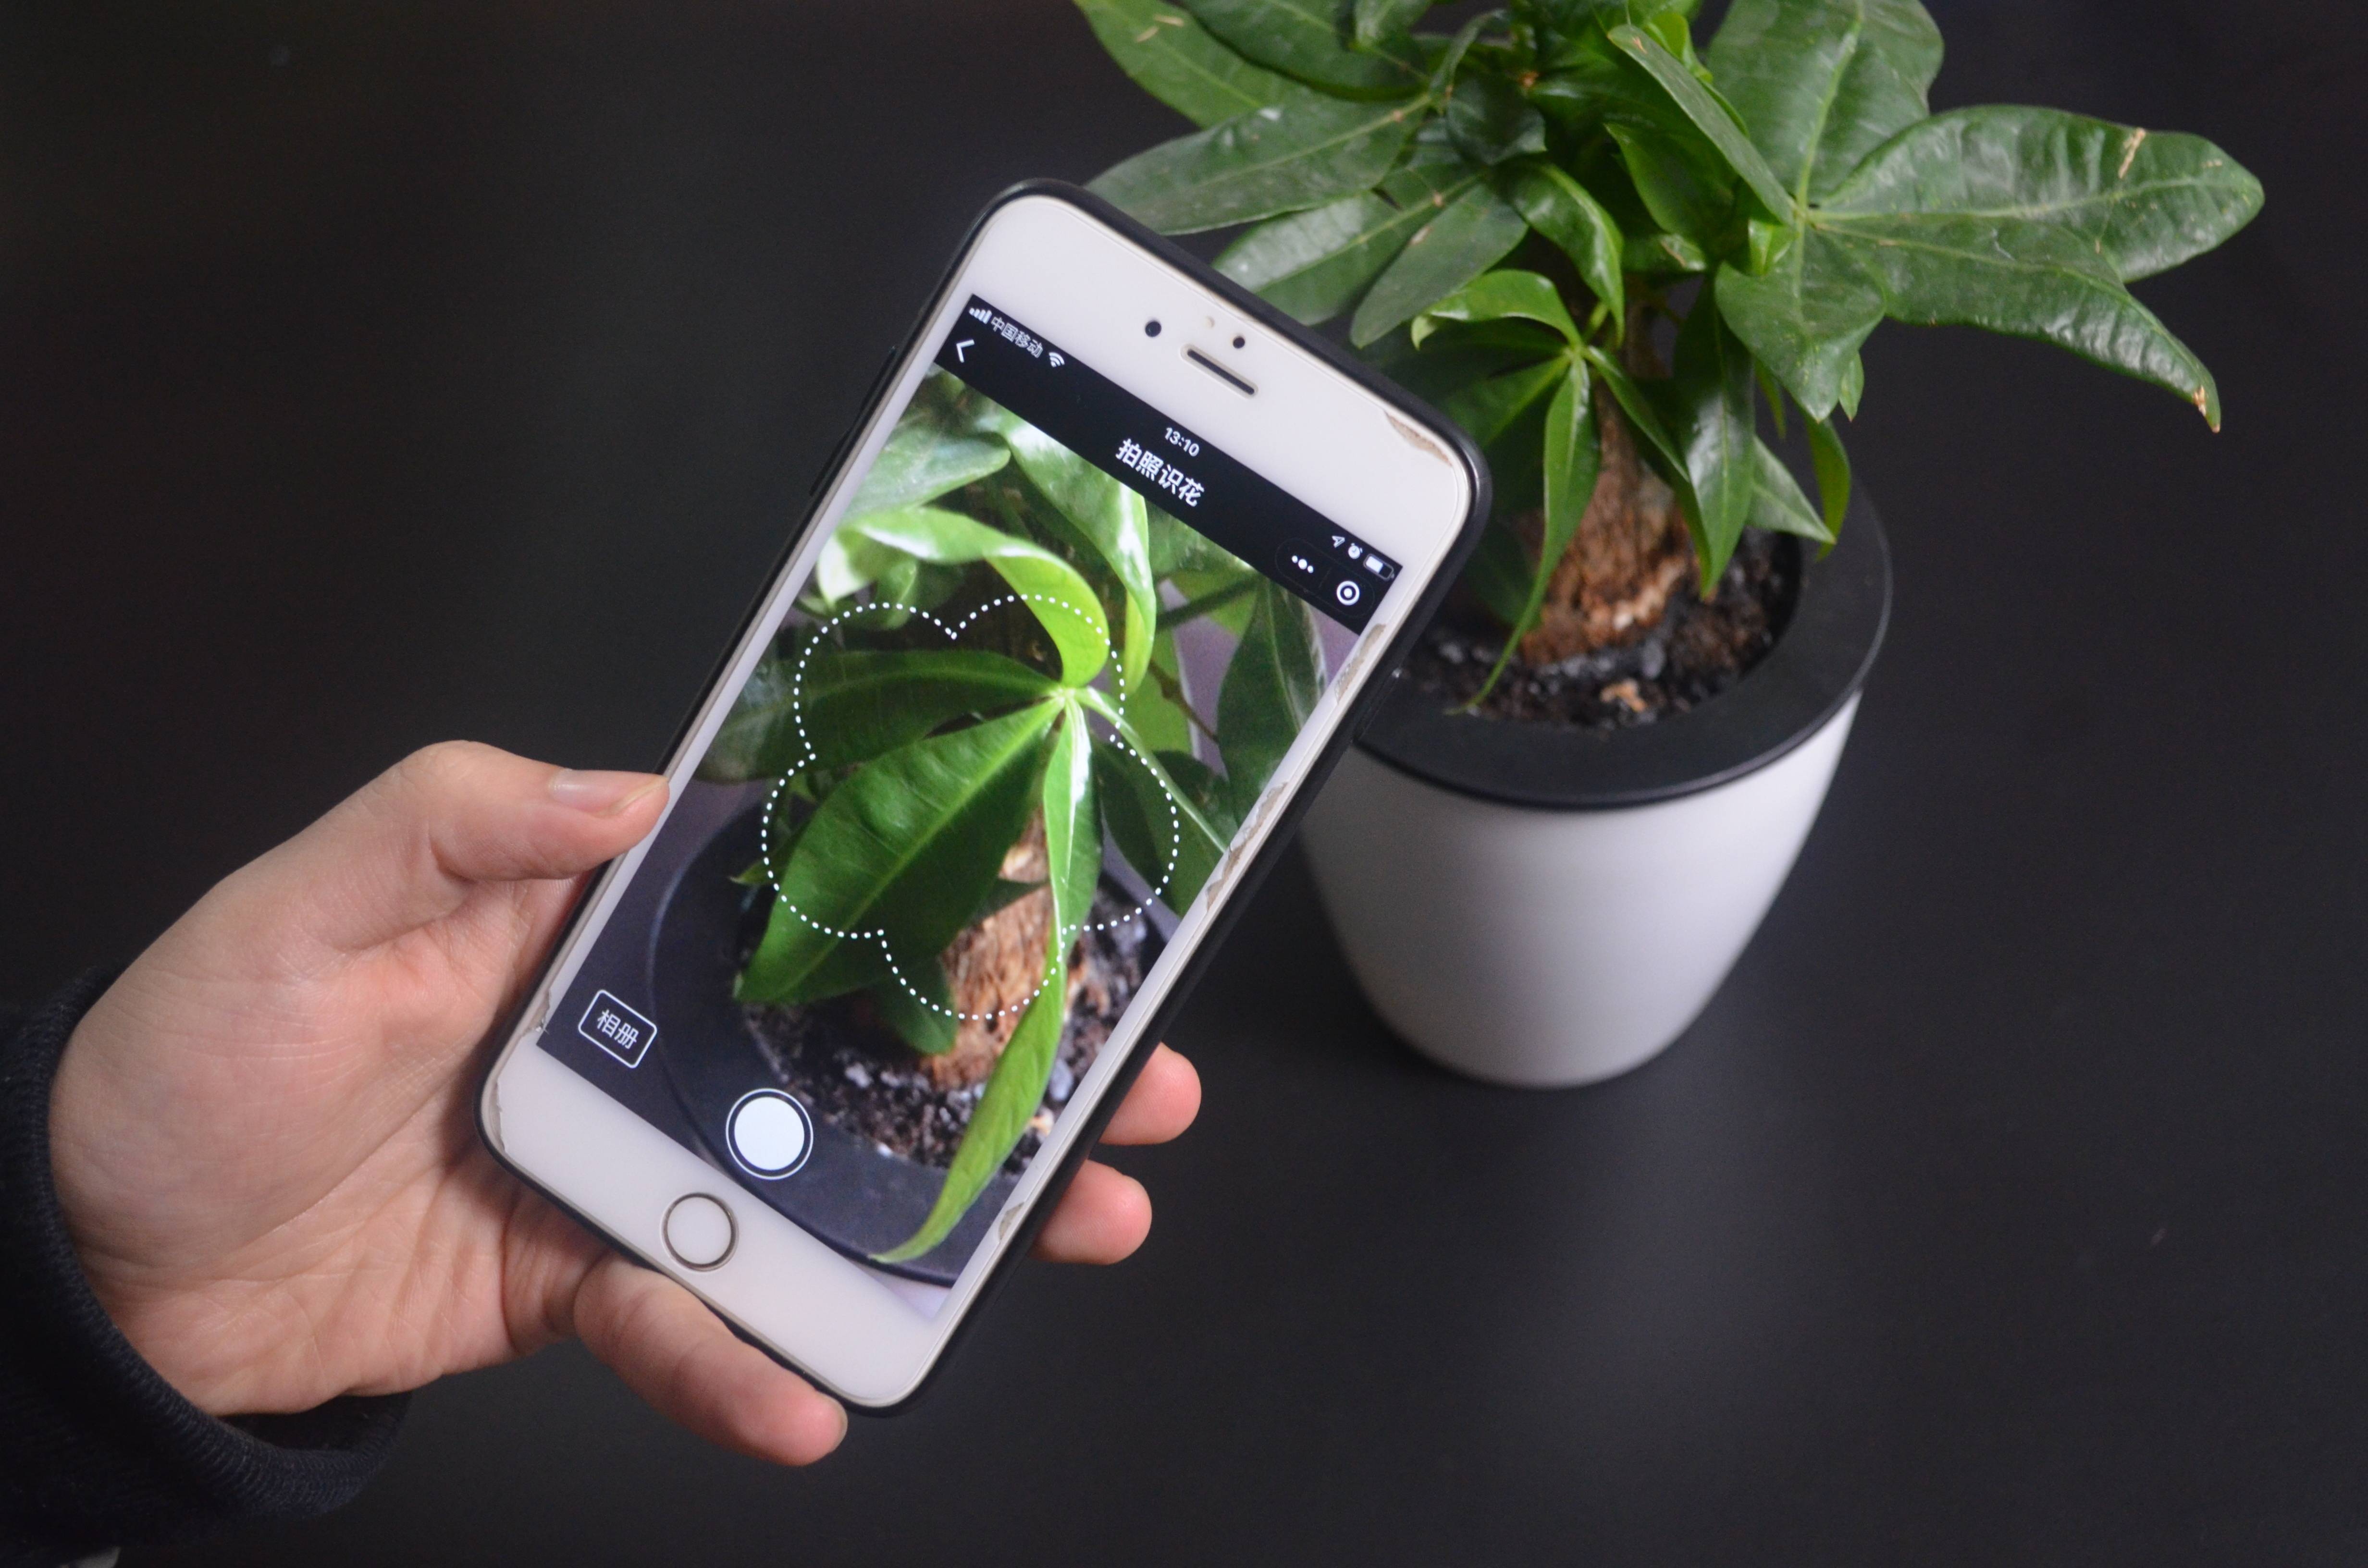 手机微信还隐藏个功能,用它对着花草拍张照,直接显示植物名